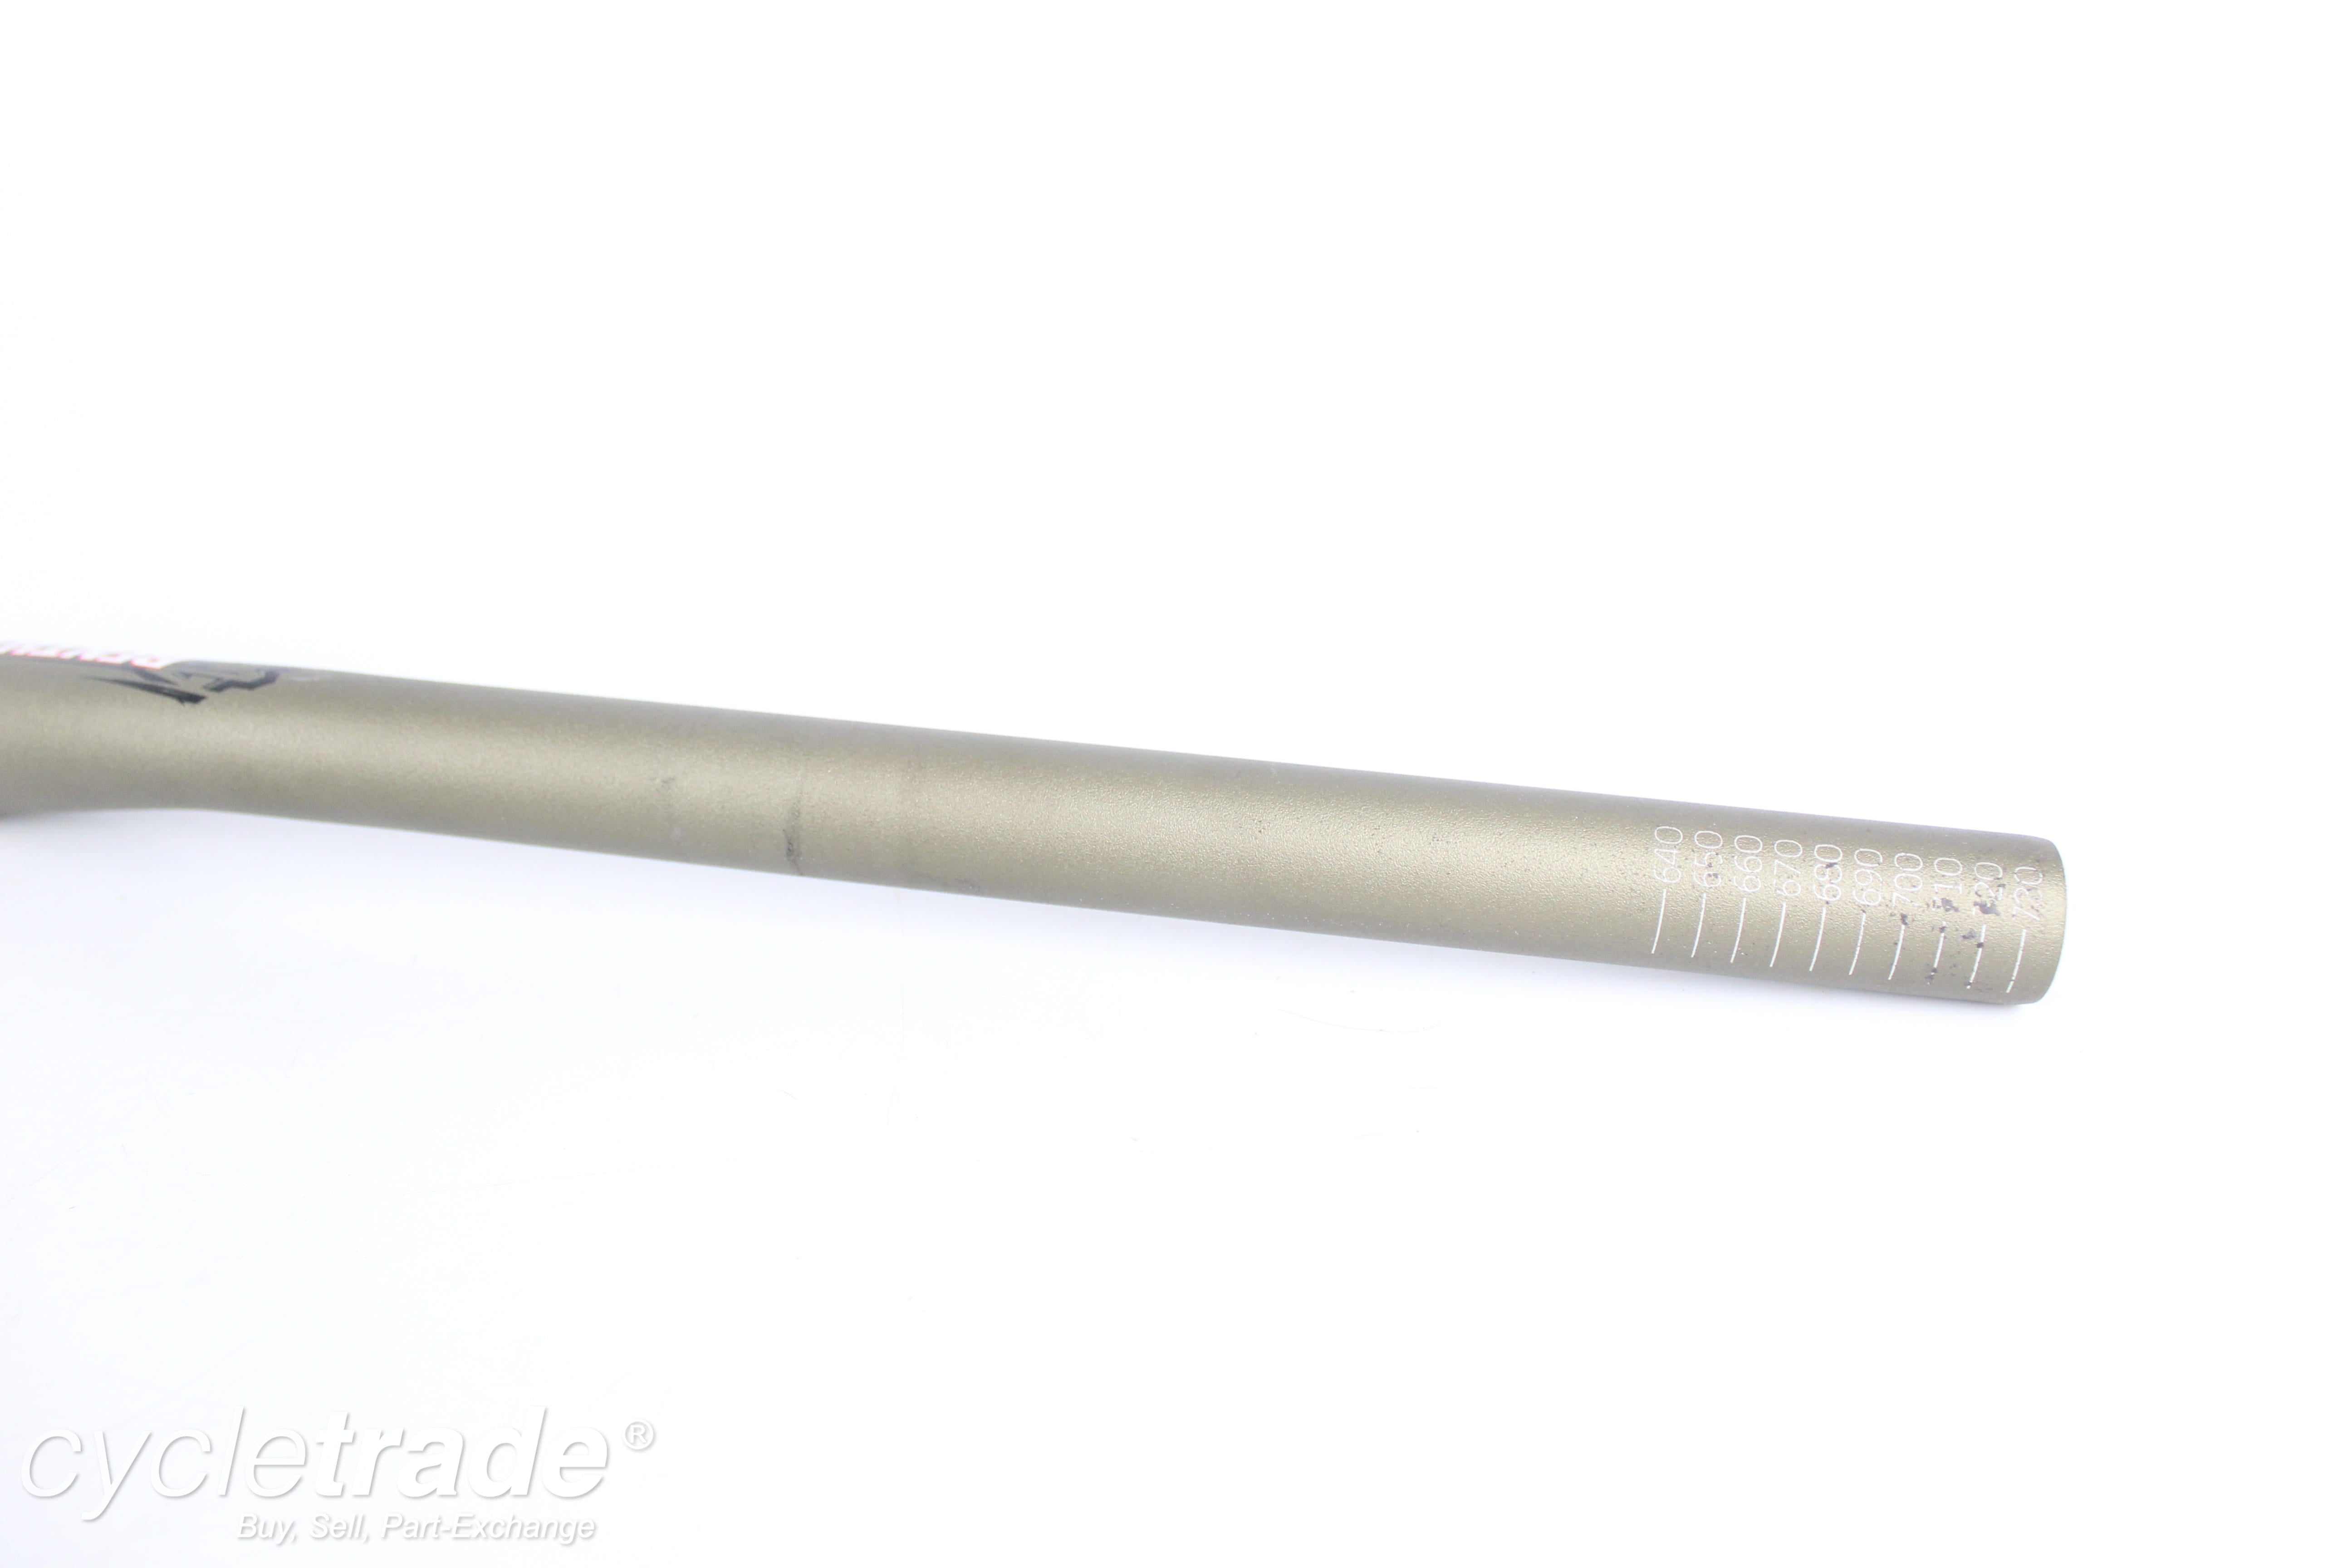 Riser bar - Renthal Fatbar Lite M119/M120, 740mm, 20/30mm rise, 31.8mm - Grade A